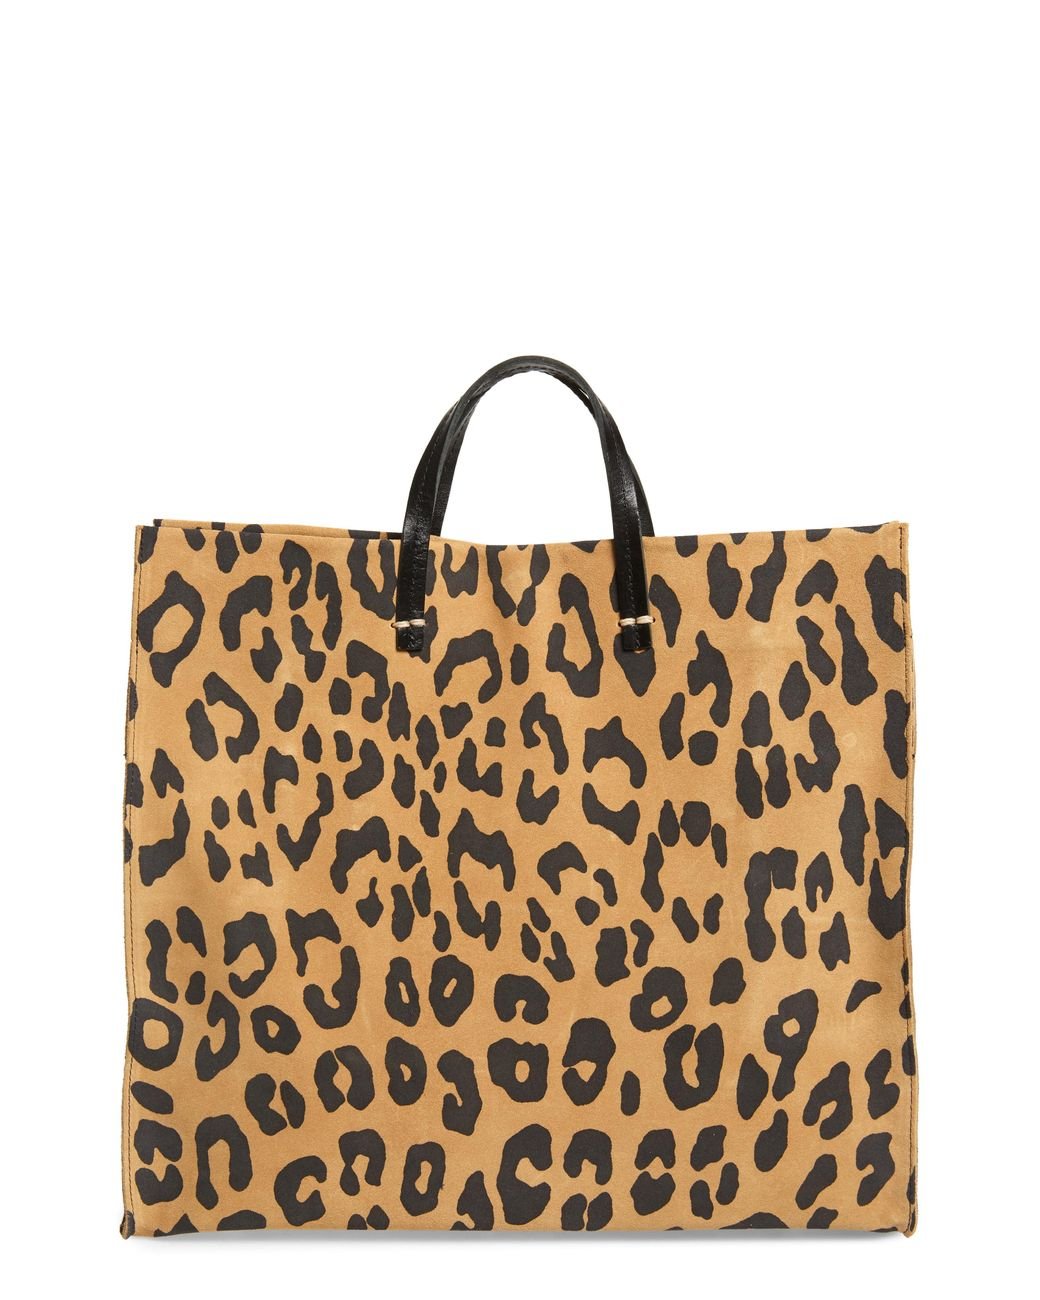 clare v leopard bag